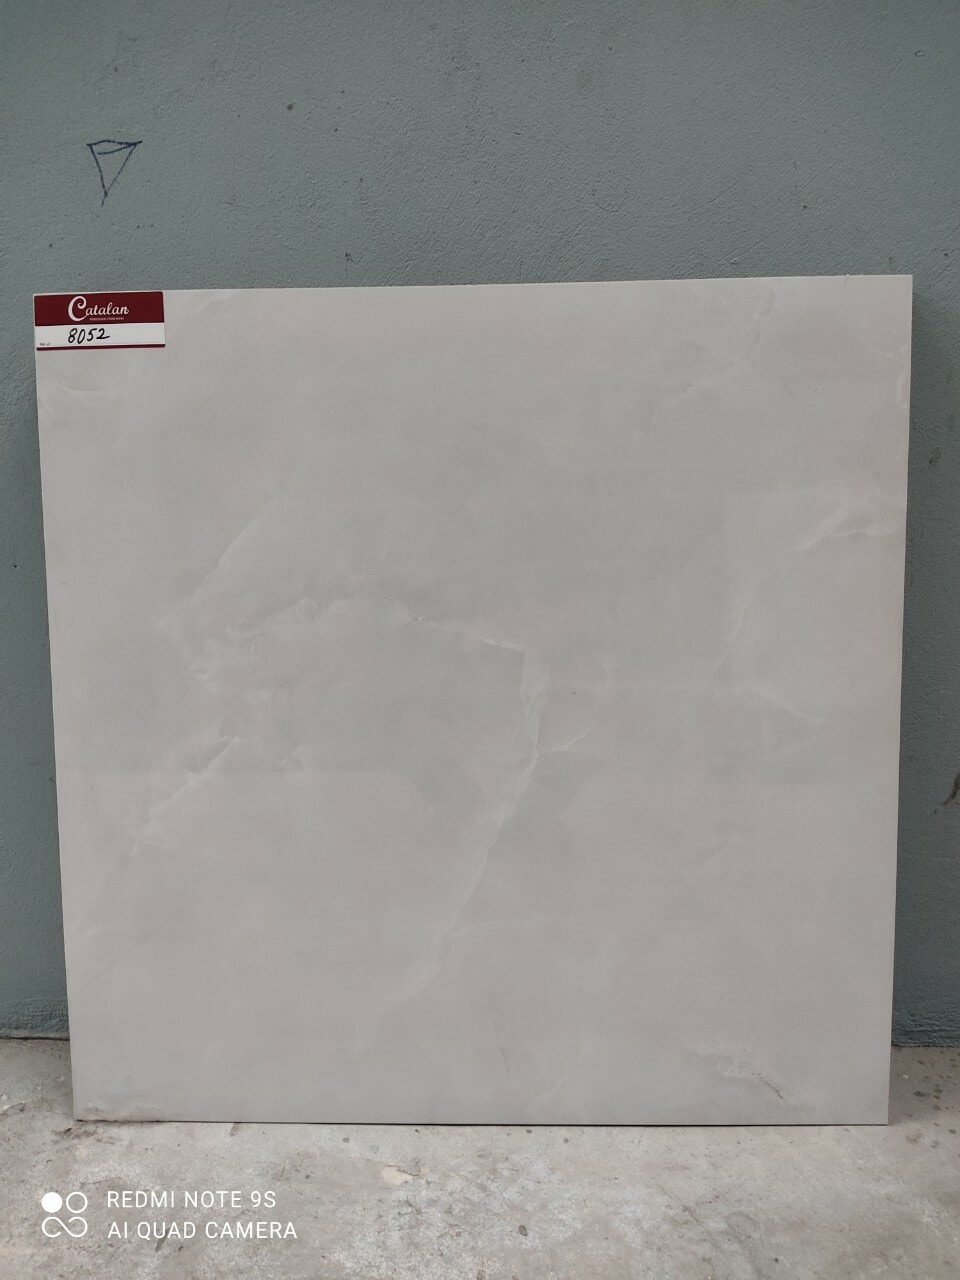 mẫu Gạch lát nền Catalan 80x80 8052 chụp thực tế tại showroom Tâm Anh